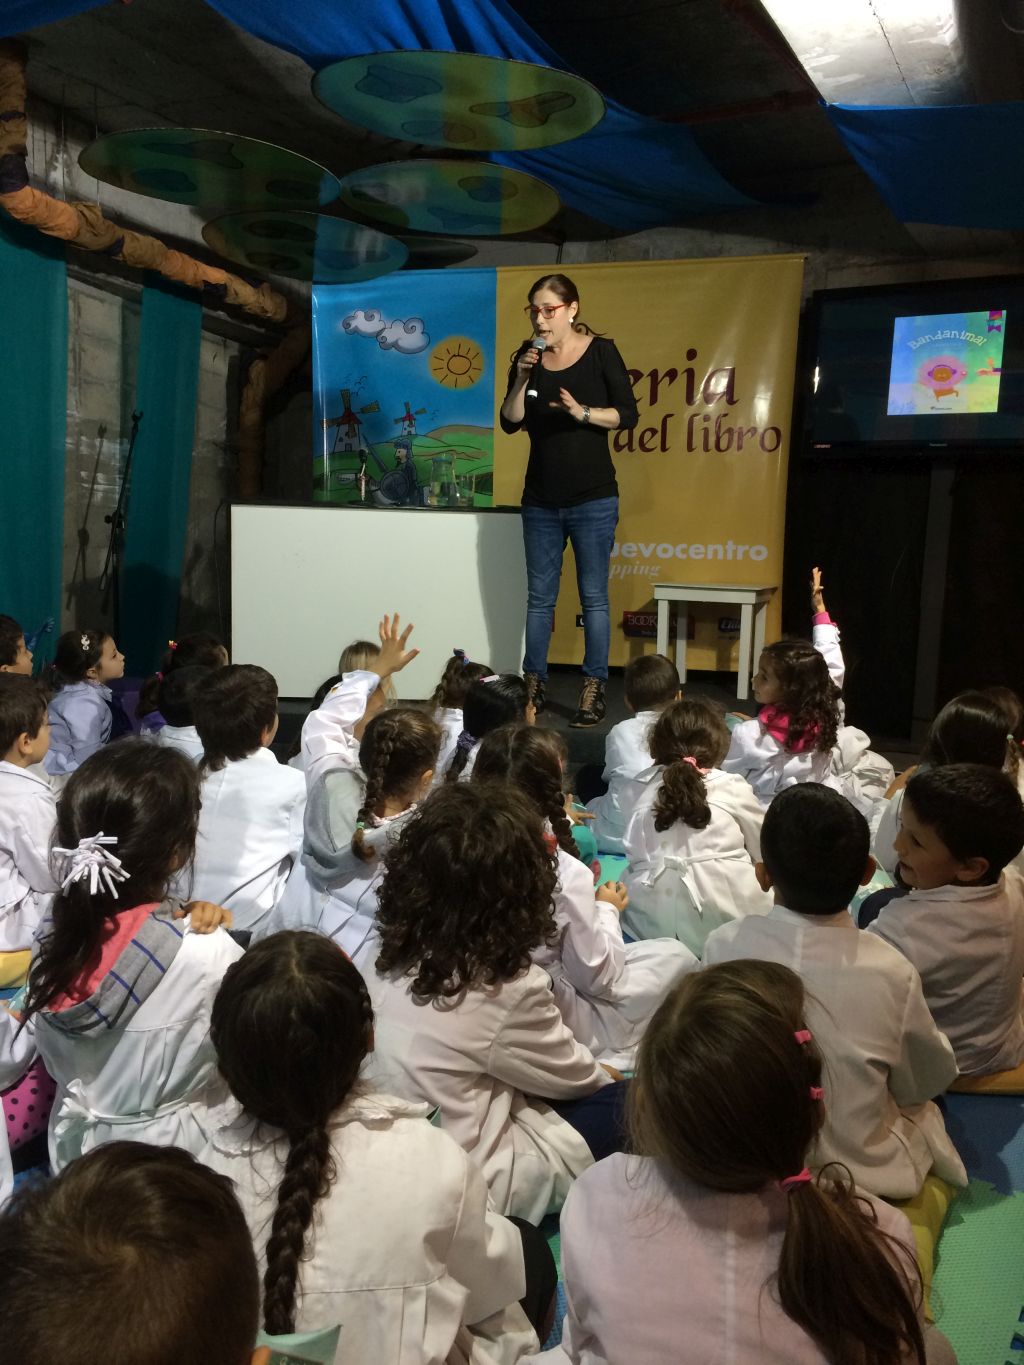 Transmitiendo historias y amor a los niños en distintas escuelas del país